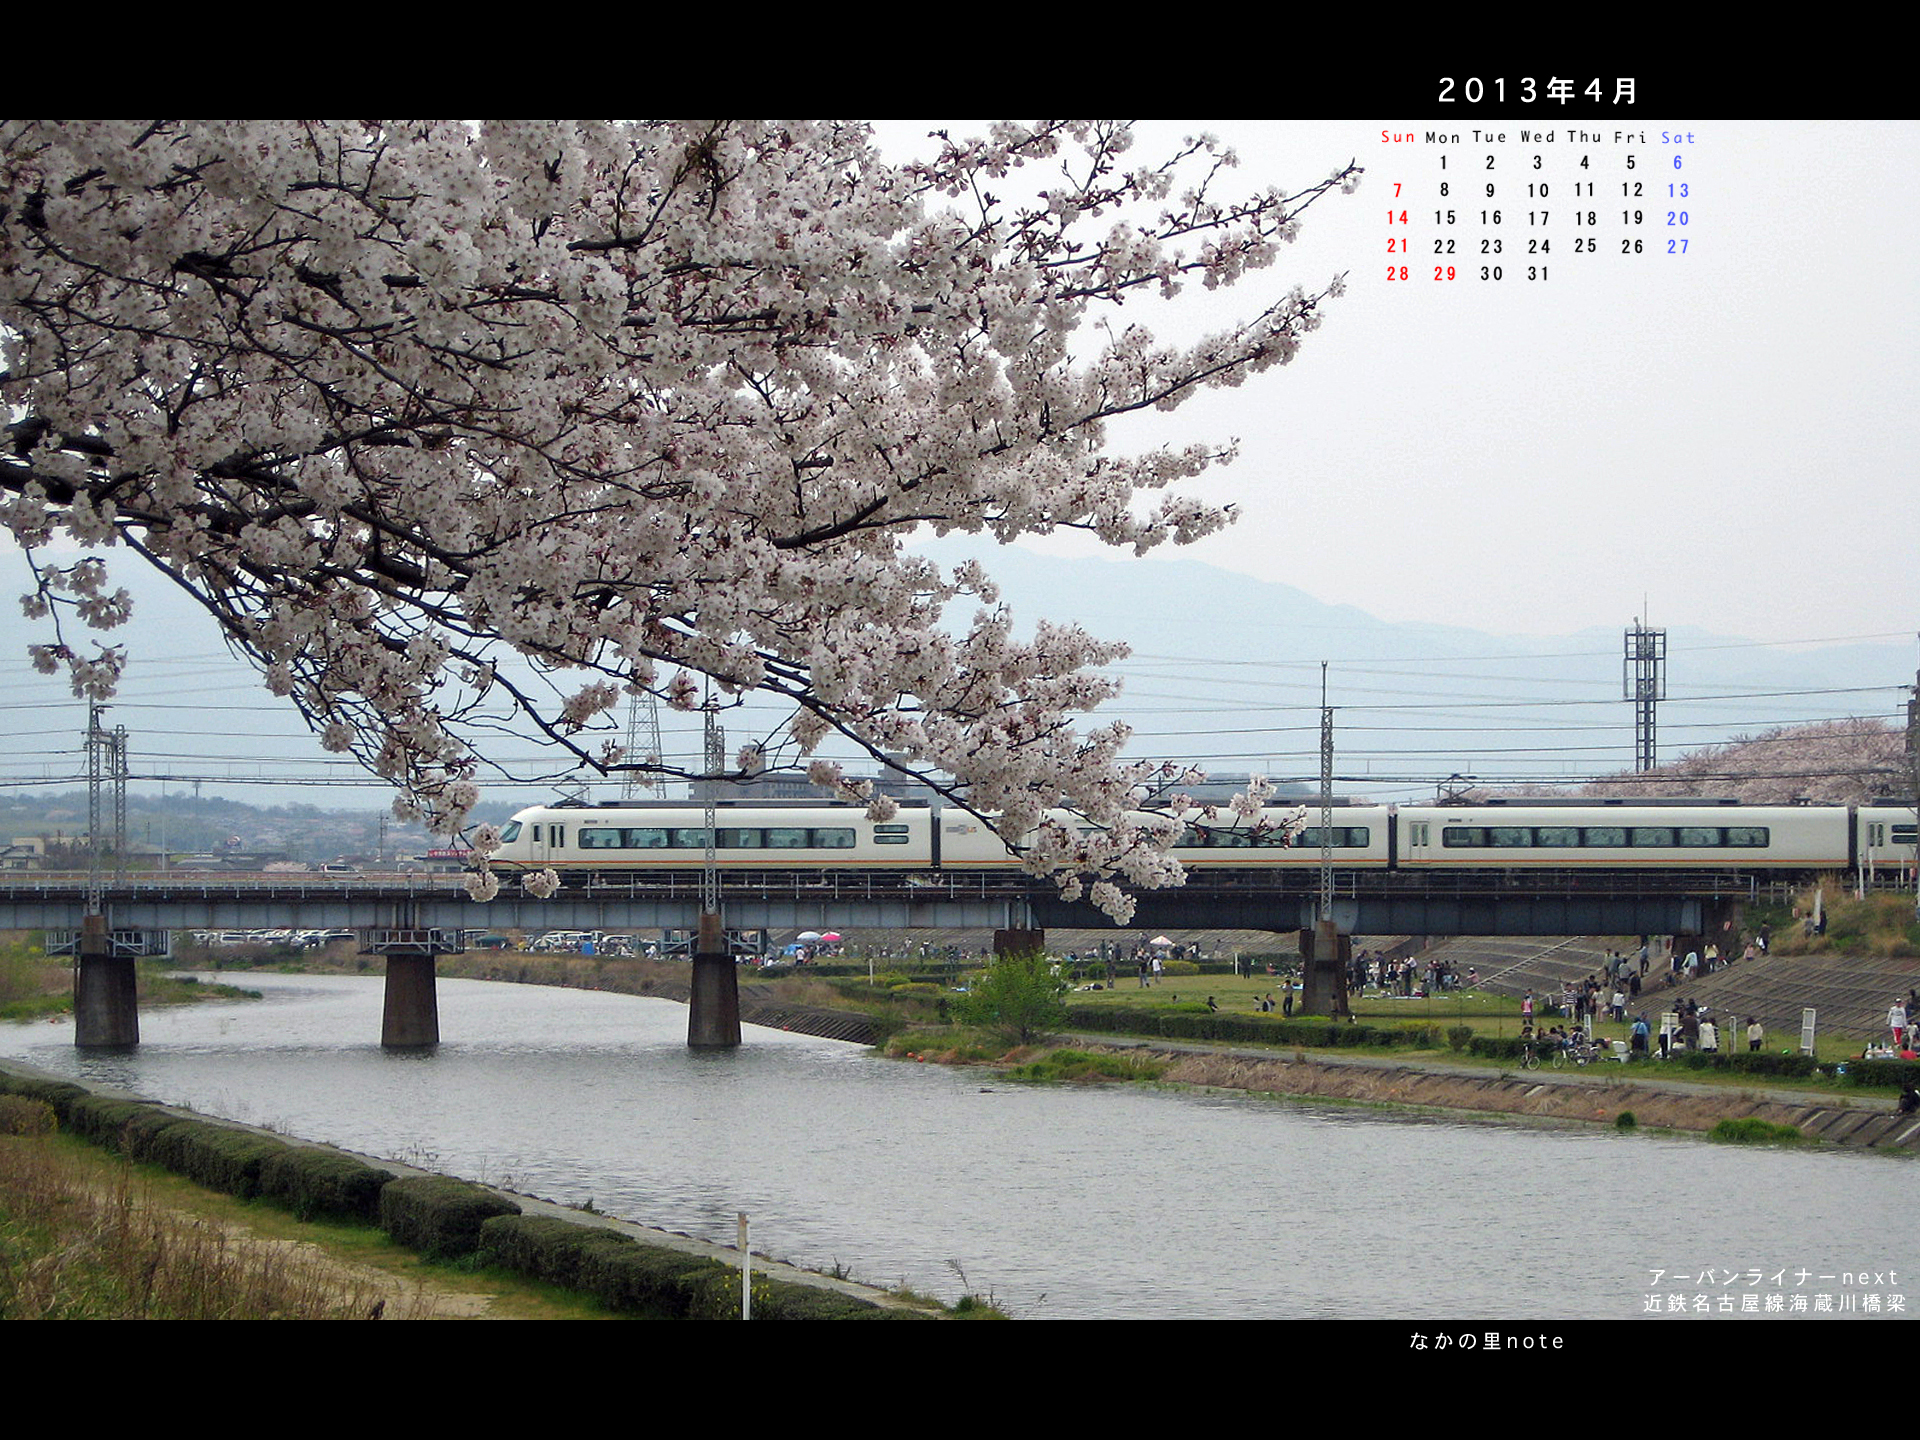 13年3月4対3画面用壁紙海蔵川ul 北播磨ローカルネットワーク